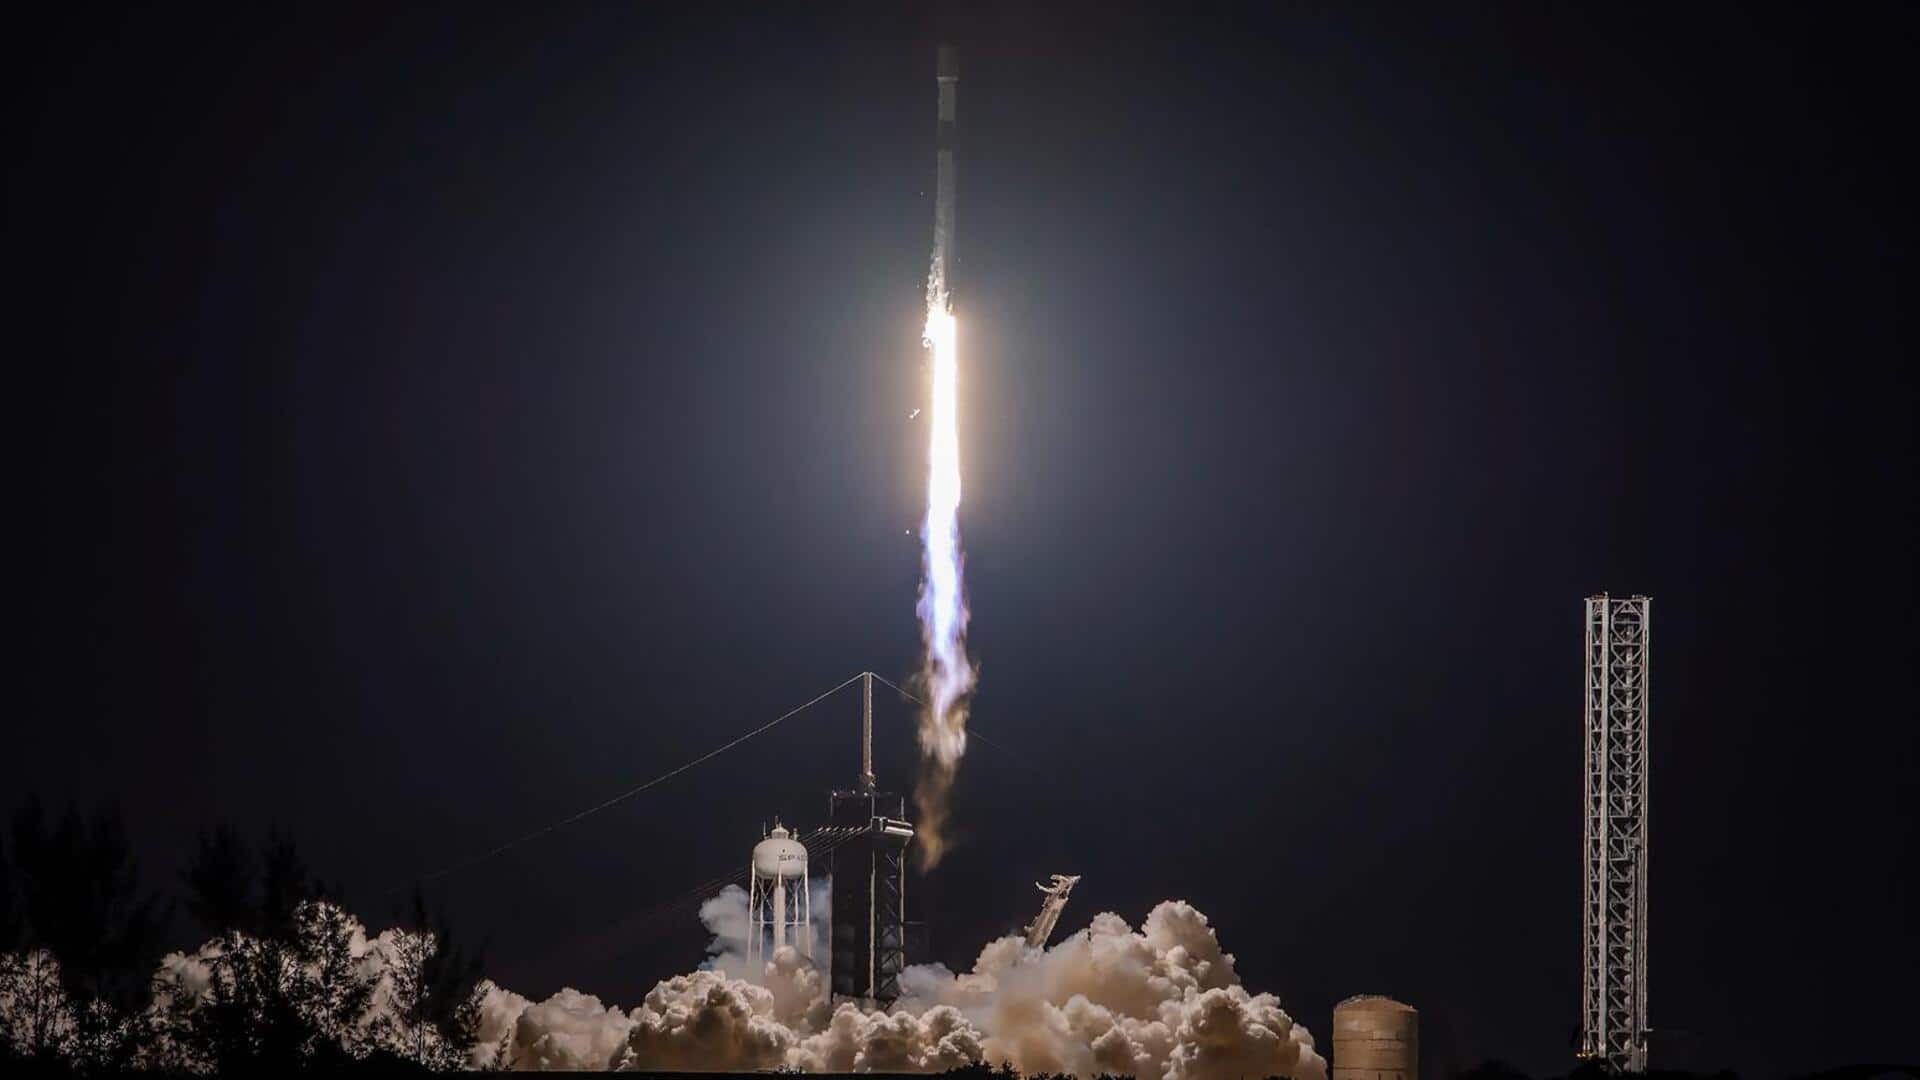 स्पेस-X ने लॉन्च किया स्टारलिंक सैटेलाइट्स का नया बैच, इस साल 56 मिशन हुए पूरे